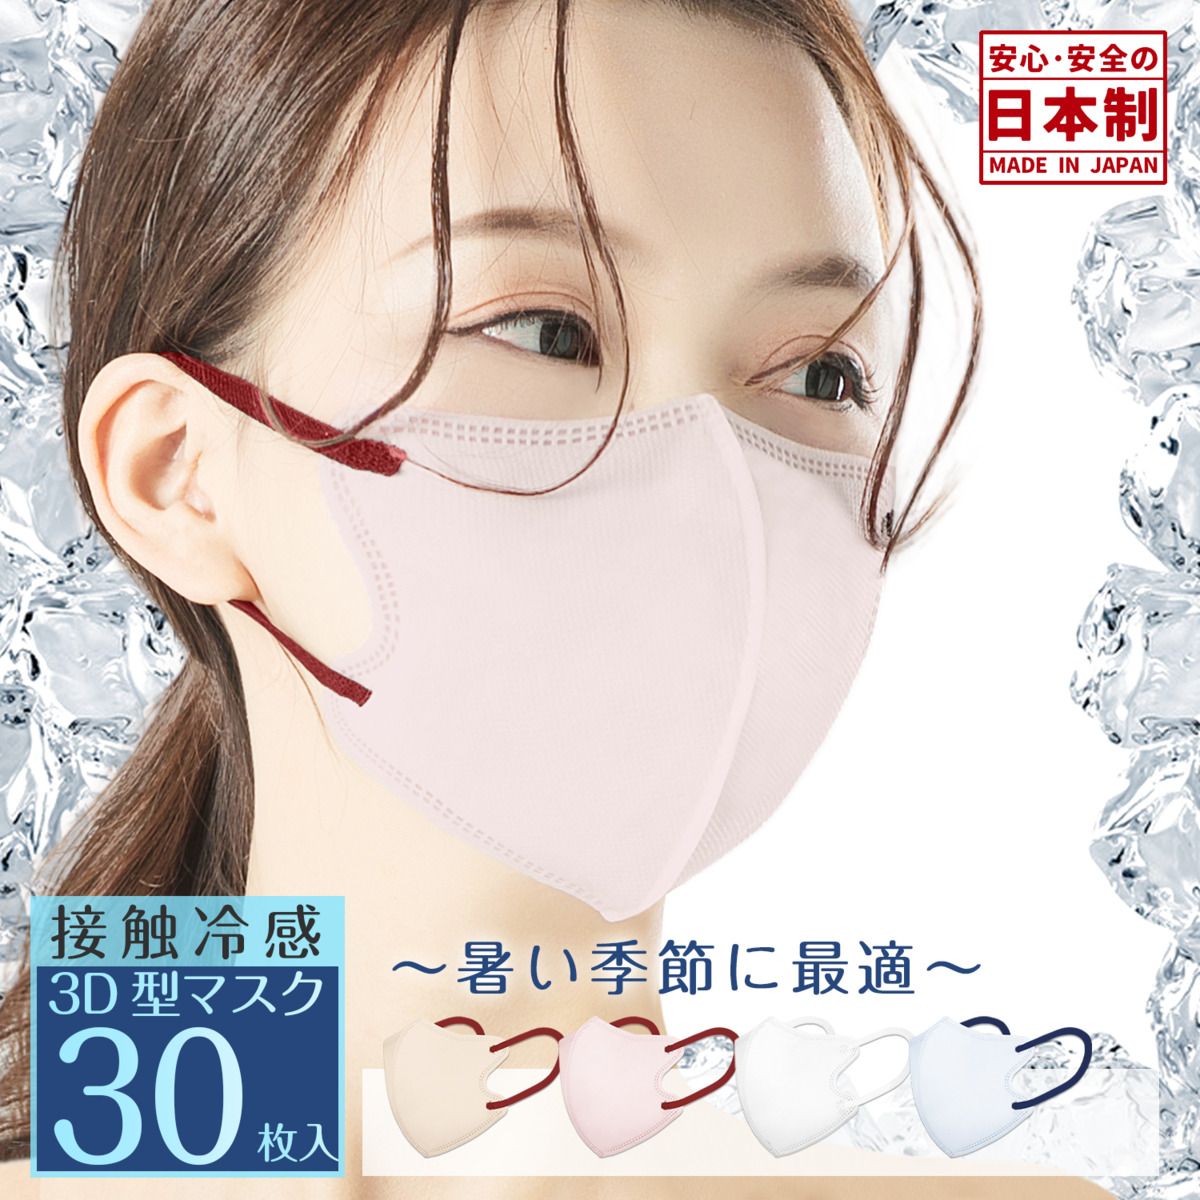 日本製 冷感3Dマスク やや小さめ 30枚 バイカラーマスク バイカラー 夏用 3層構造 息しやすい 大人用 不織布 カラーマスク 花粉対策子供用マスク 小さめ